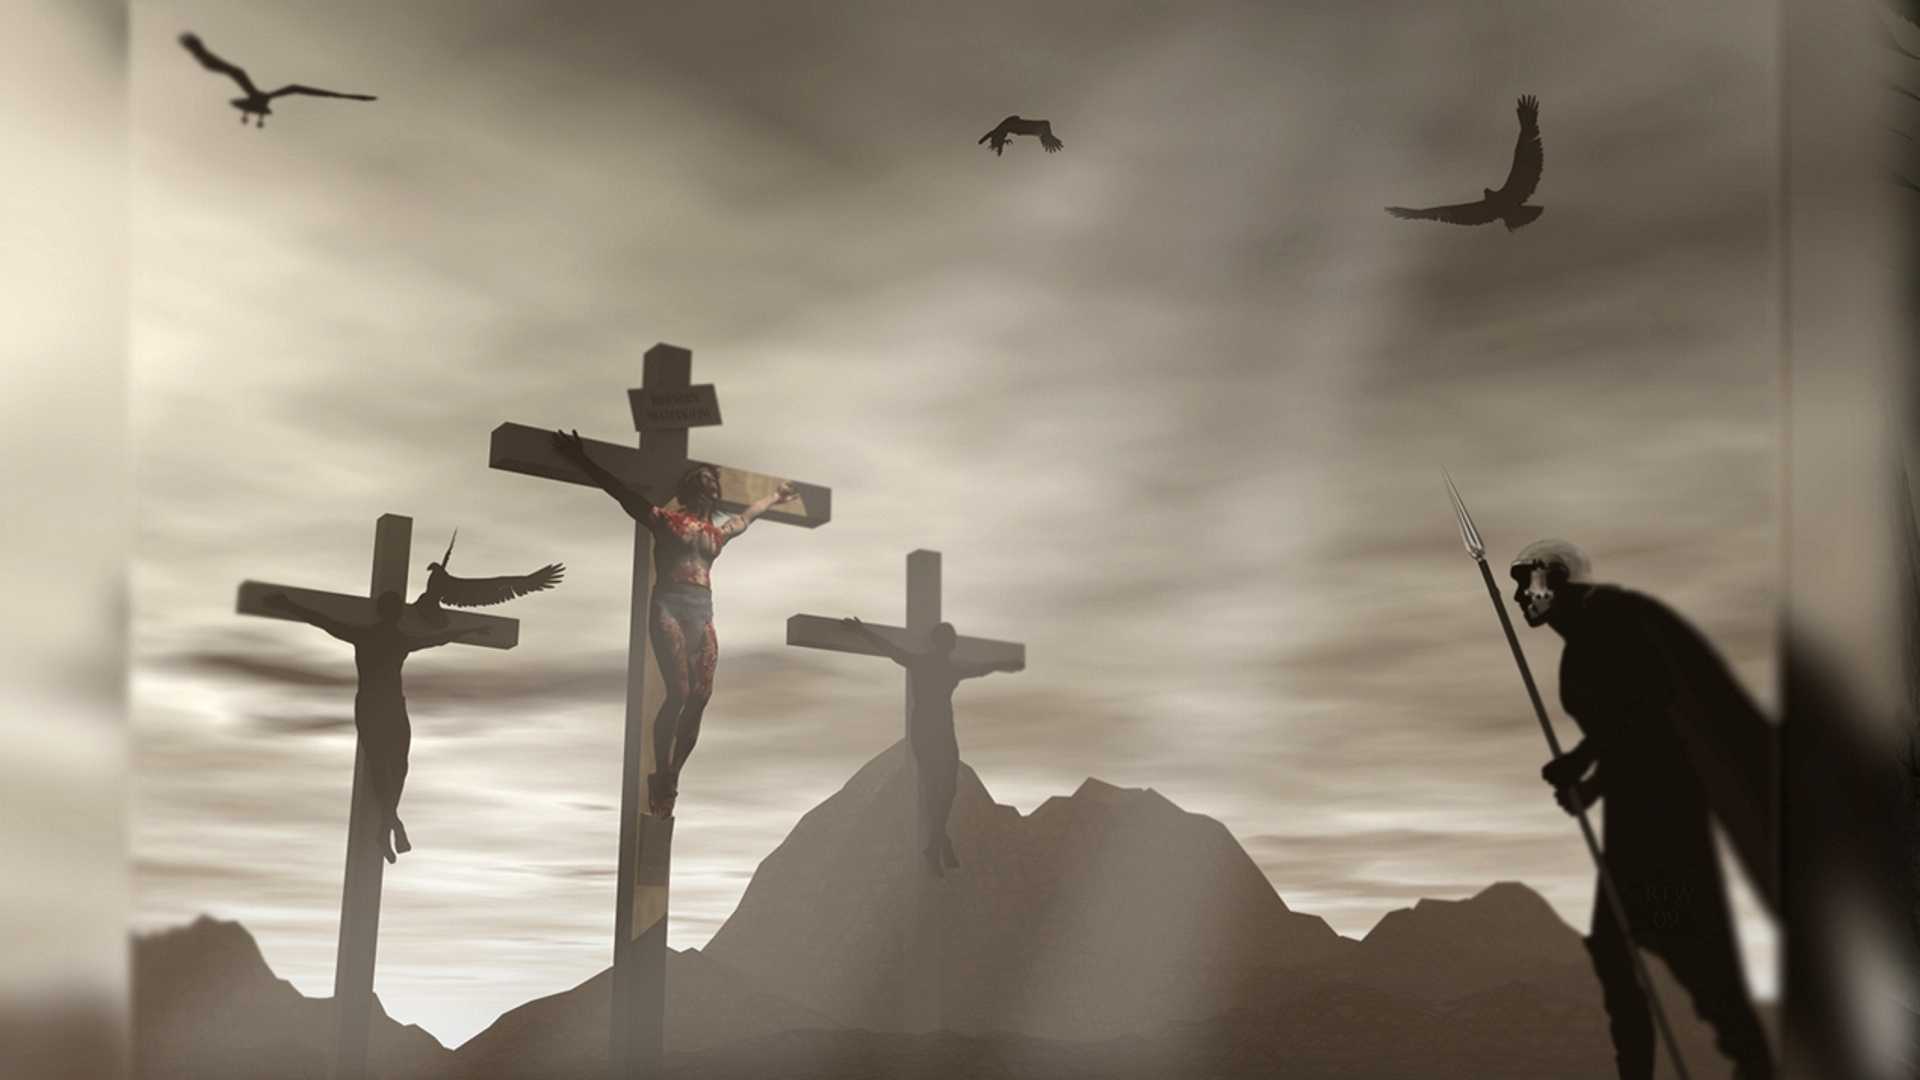 Бесплатная загрузка | иллюстрация иисуса христа, христианский крест распятие христианство, иисус христос, крест, рука, обои для рабочего стола png | pngwing